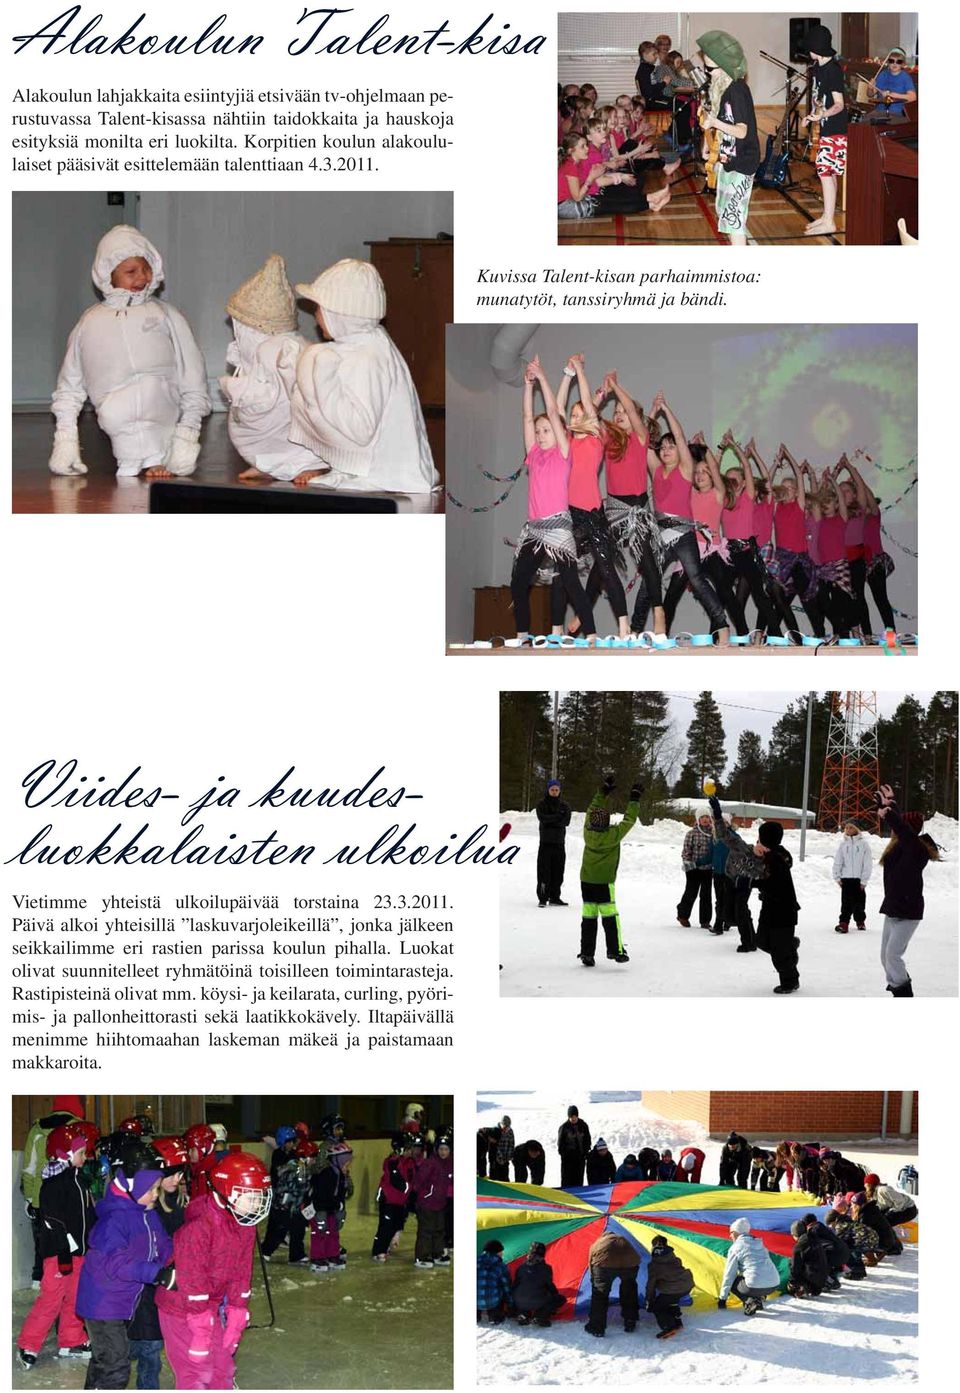 Viides- ja kuudesluokkalaisten ulkoilua Vietimme yhteistä ulkoilupäivää torstaina 23.3.2011.